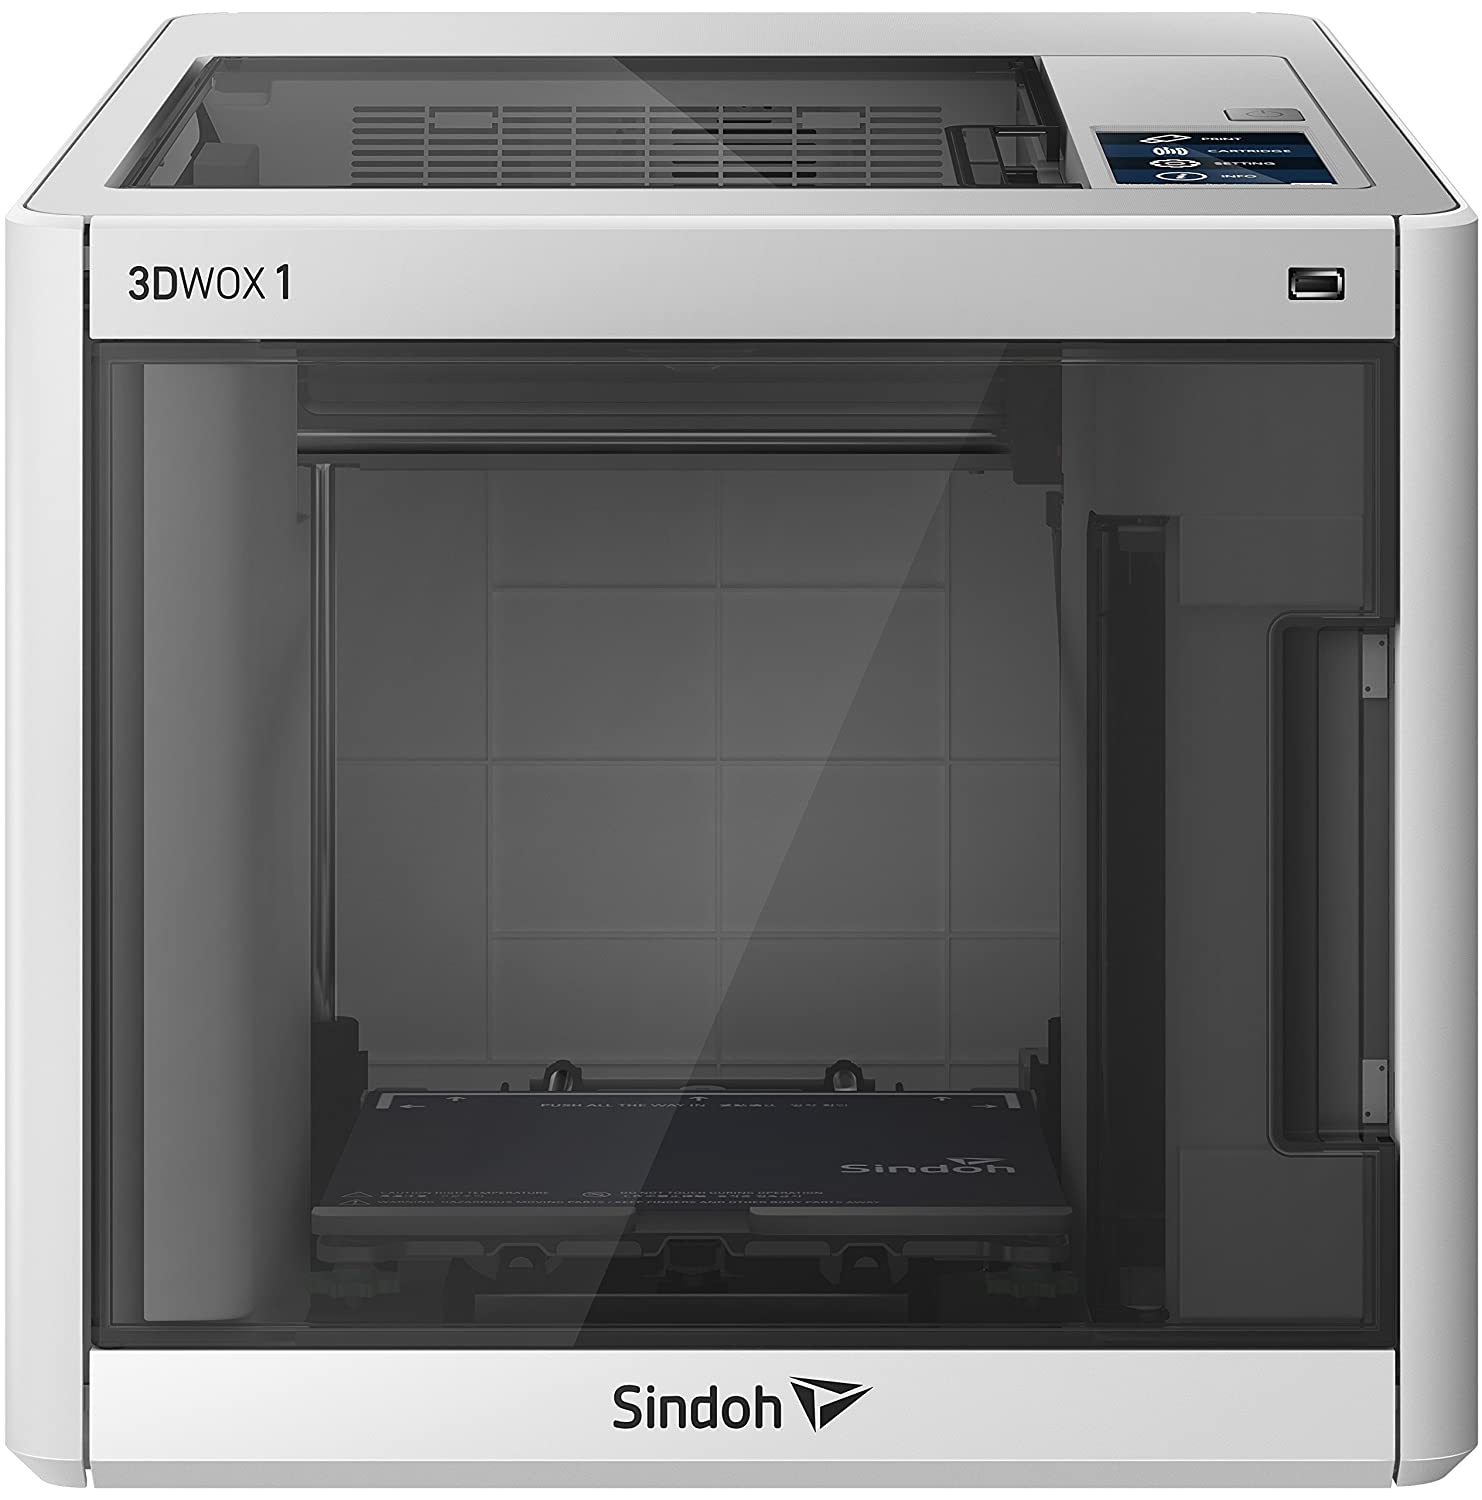 SINDOH 3DWOX 1 3D PRINTER